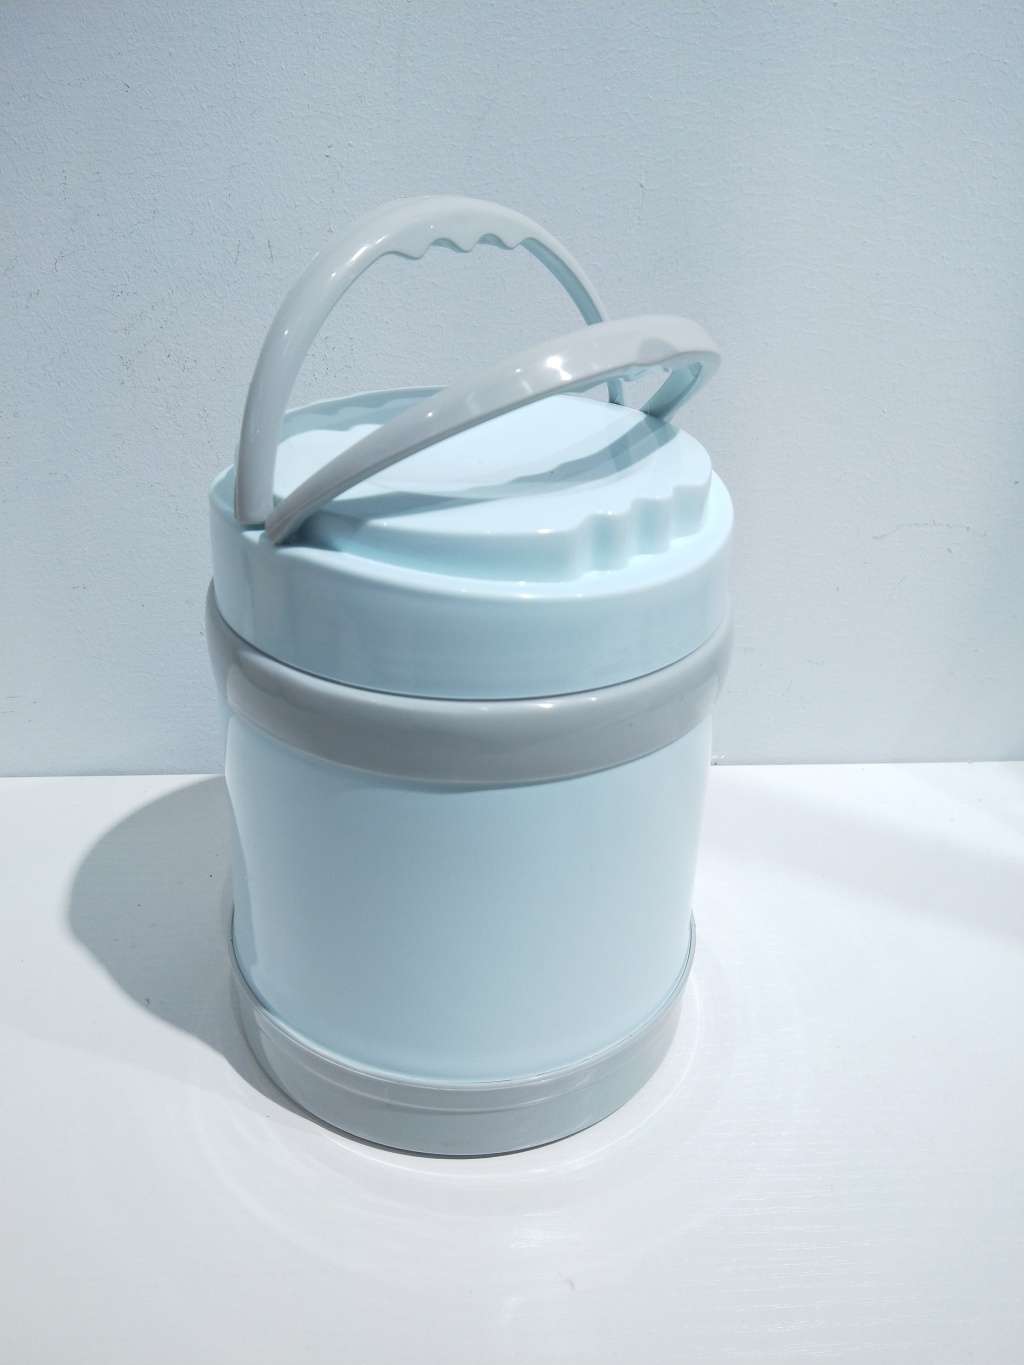 T07-8872不锈钢保温饭盒 便携式提手保温桶 便当盒塑料餐具详情图6